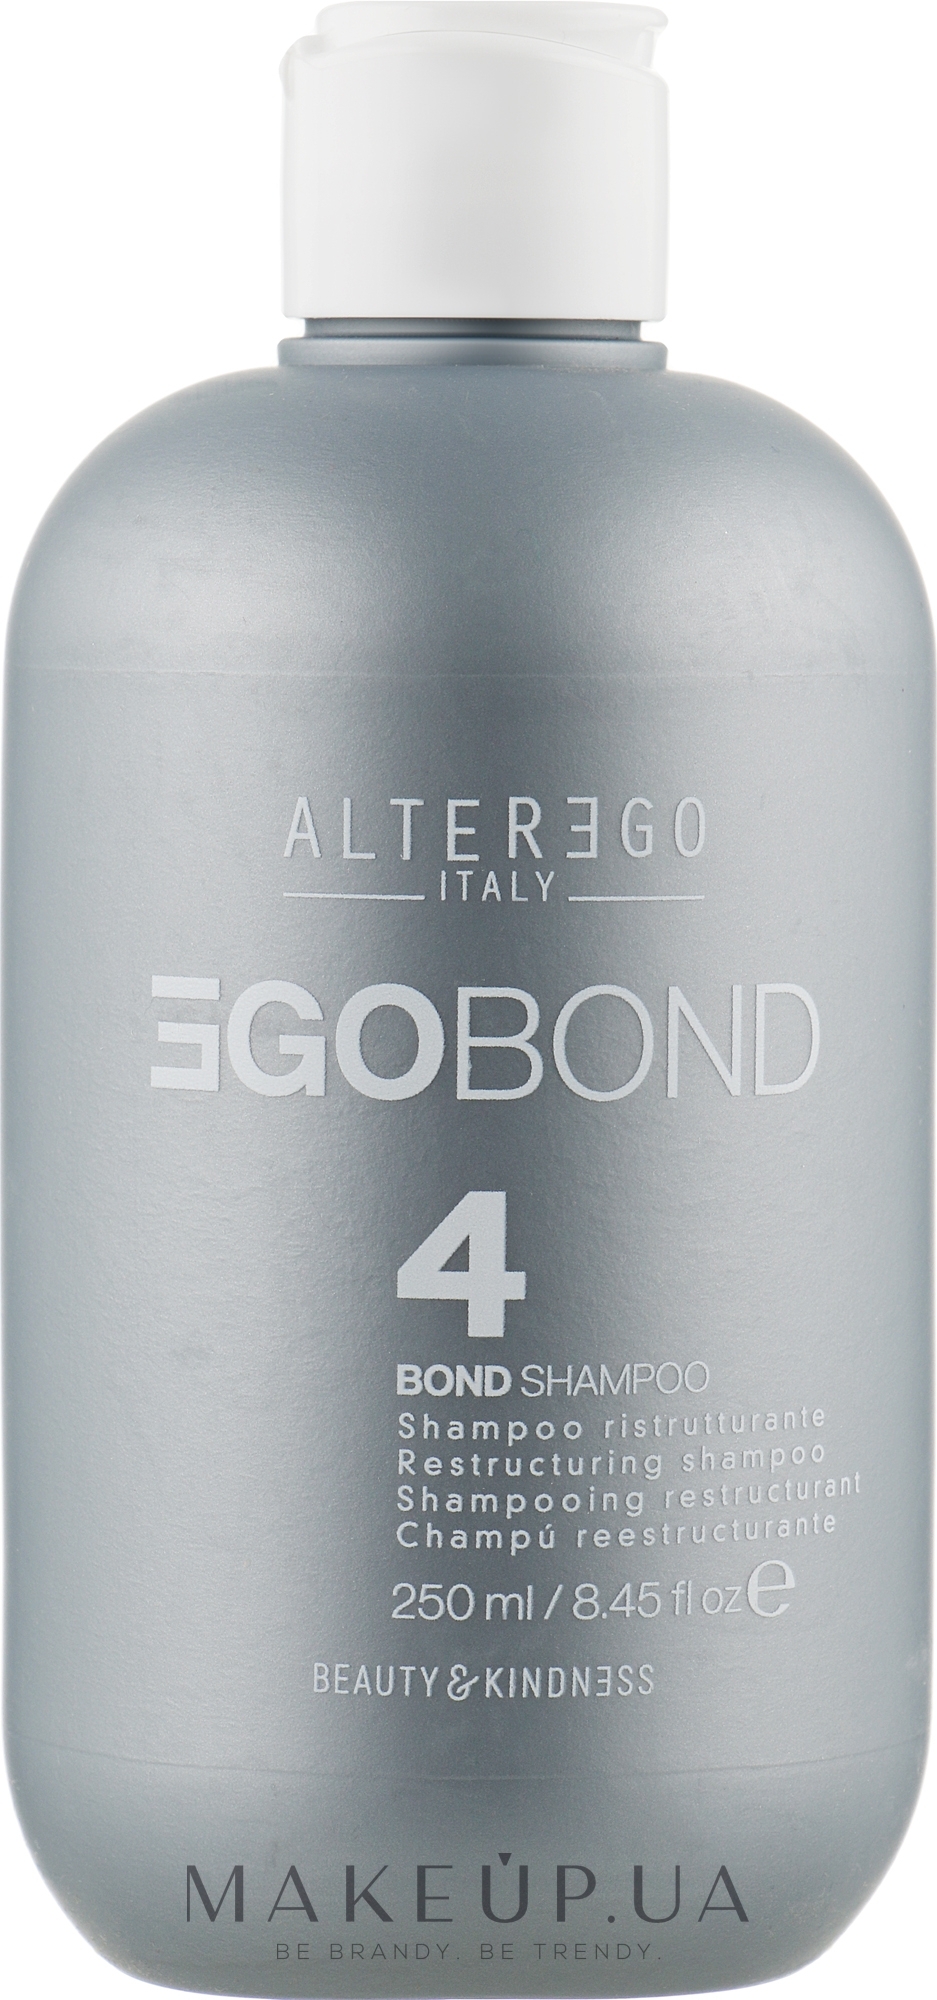 Реструктурувальний шампунь для відновлення й живлення волосся - Alter Ego Egobond 4 Bond Shampoo — фото 250ml